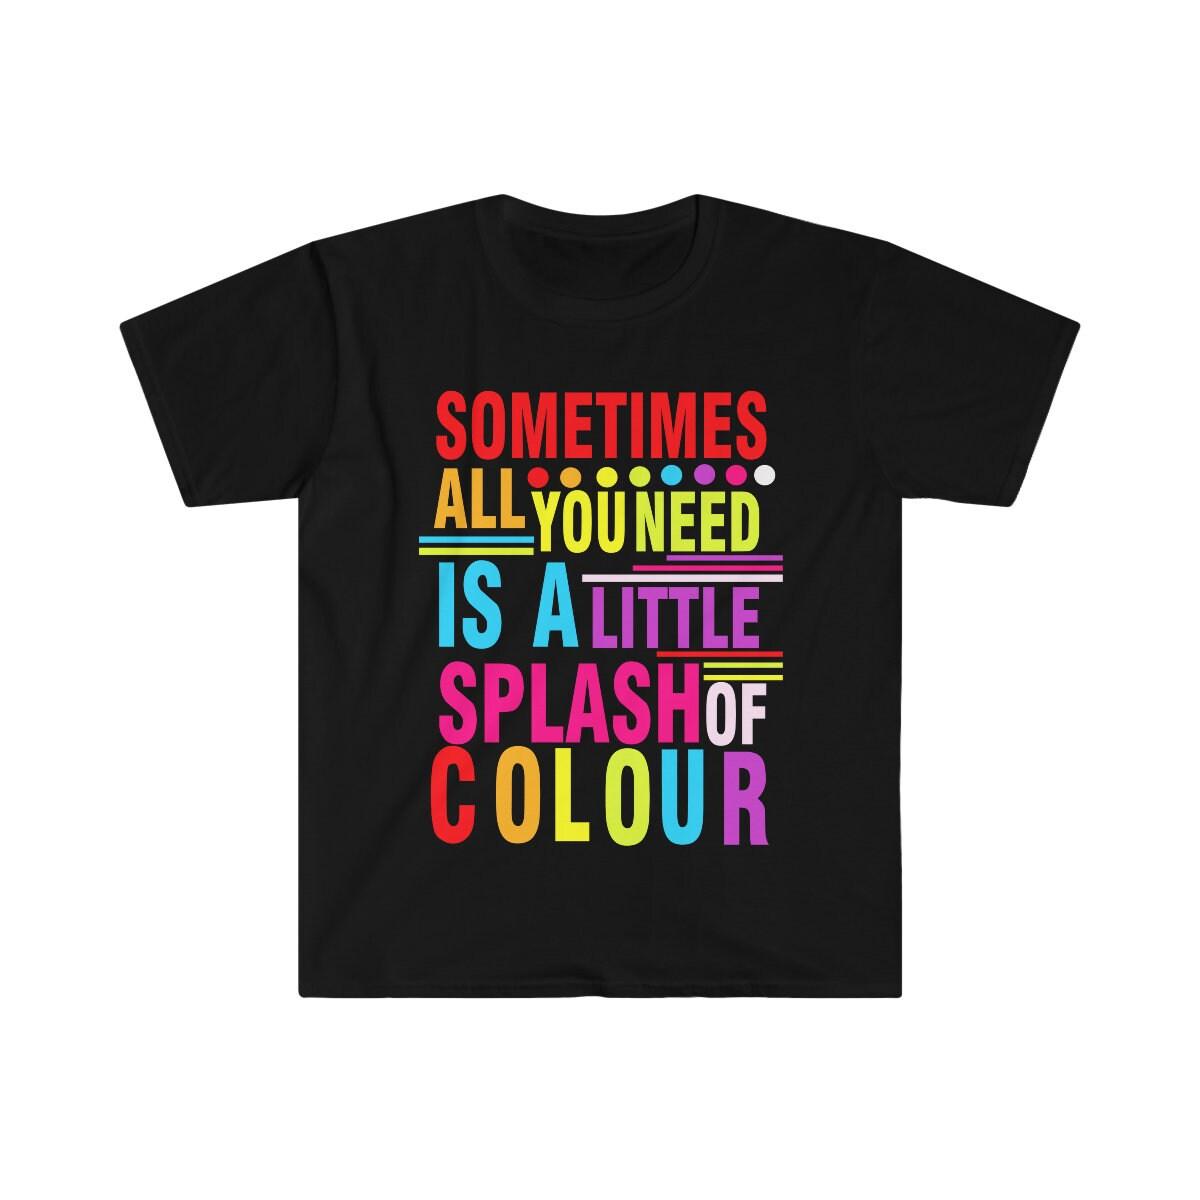 कभी-कभी आपको केवल रंगीन शर्ट, सकारात्मक वाइब्स, प्रेरणादायक ग्राफिक शर्ट, रंगीन शर्ट, समर बीच शर्ट की आवश्यकता होती है, कलाकार टीशर्ट, बीच शर्ट, रंगीन शर्ट, ग्राफिक शर्ट, प्रेरणादायक शर्ट, प्रेरणा उपहार, पेंटर शर्ट , सकारात्मक वाइब्स, रंगों की बौछार, स्ट्रीटवियर शर्ट, समर शर्ट, टी, टीज़, ट्रेंडी टी शर्ट - प्लसमिनस्को.कॉम